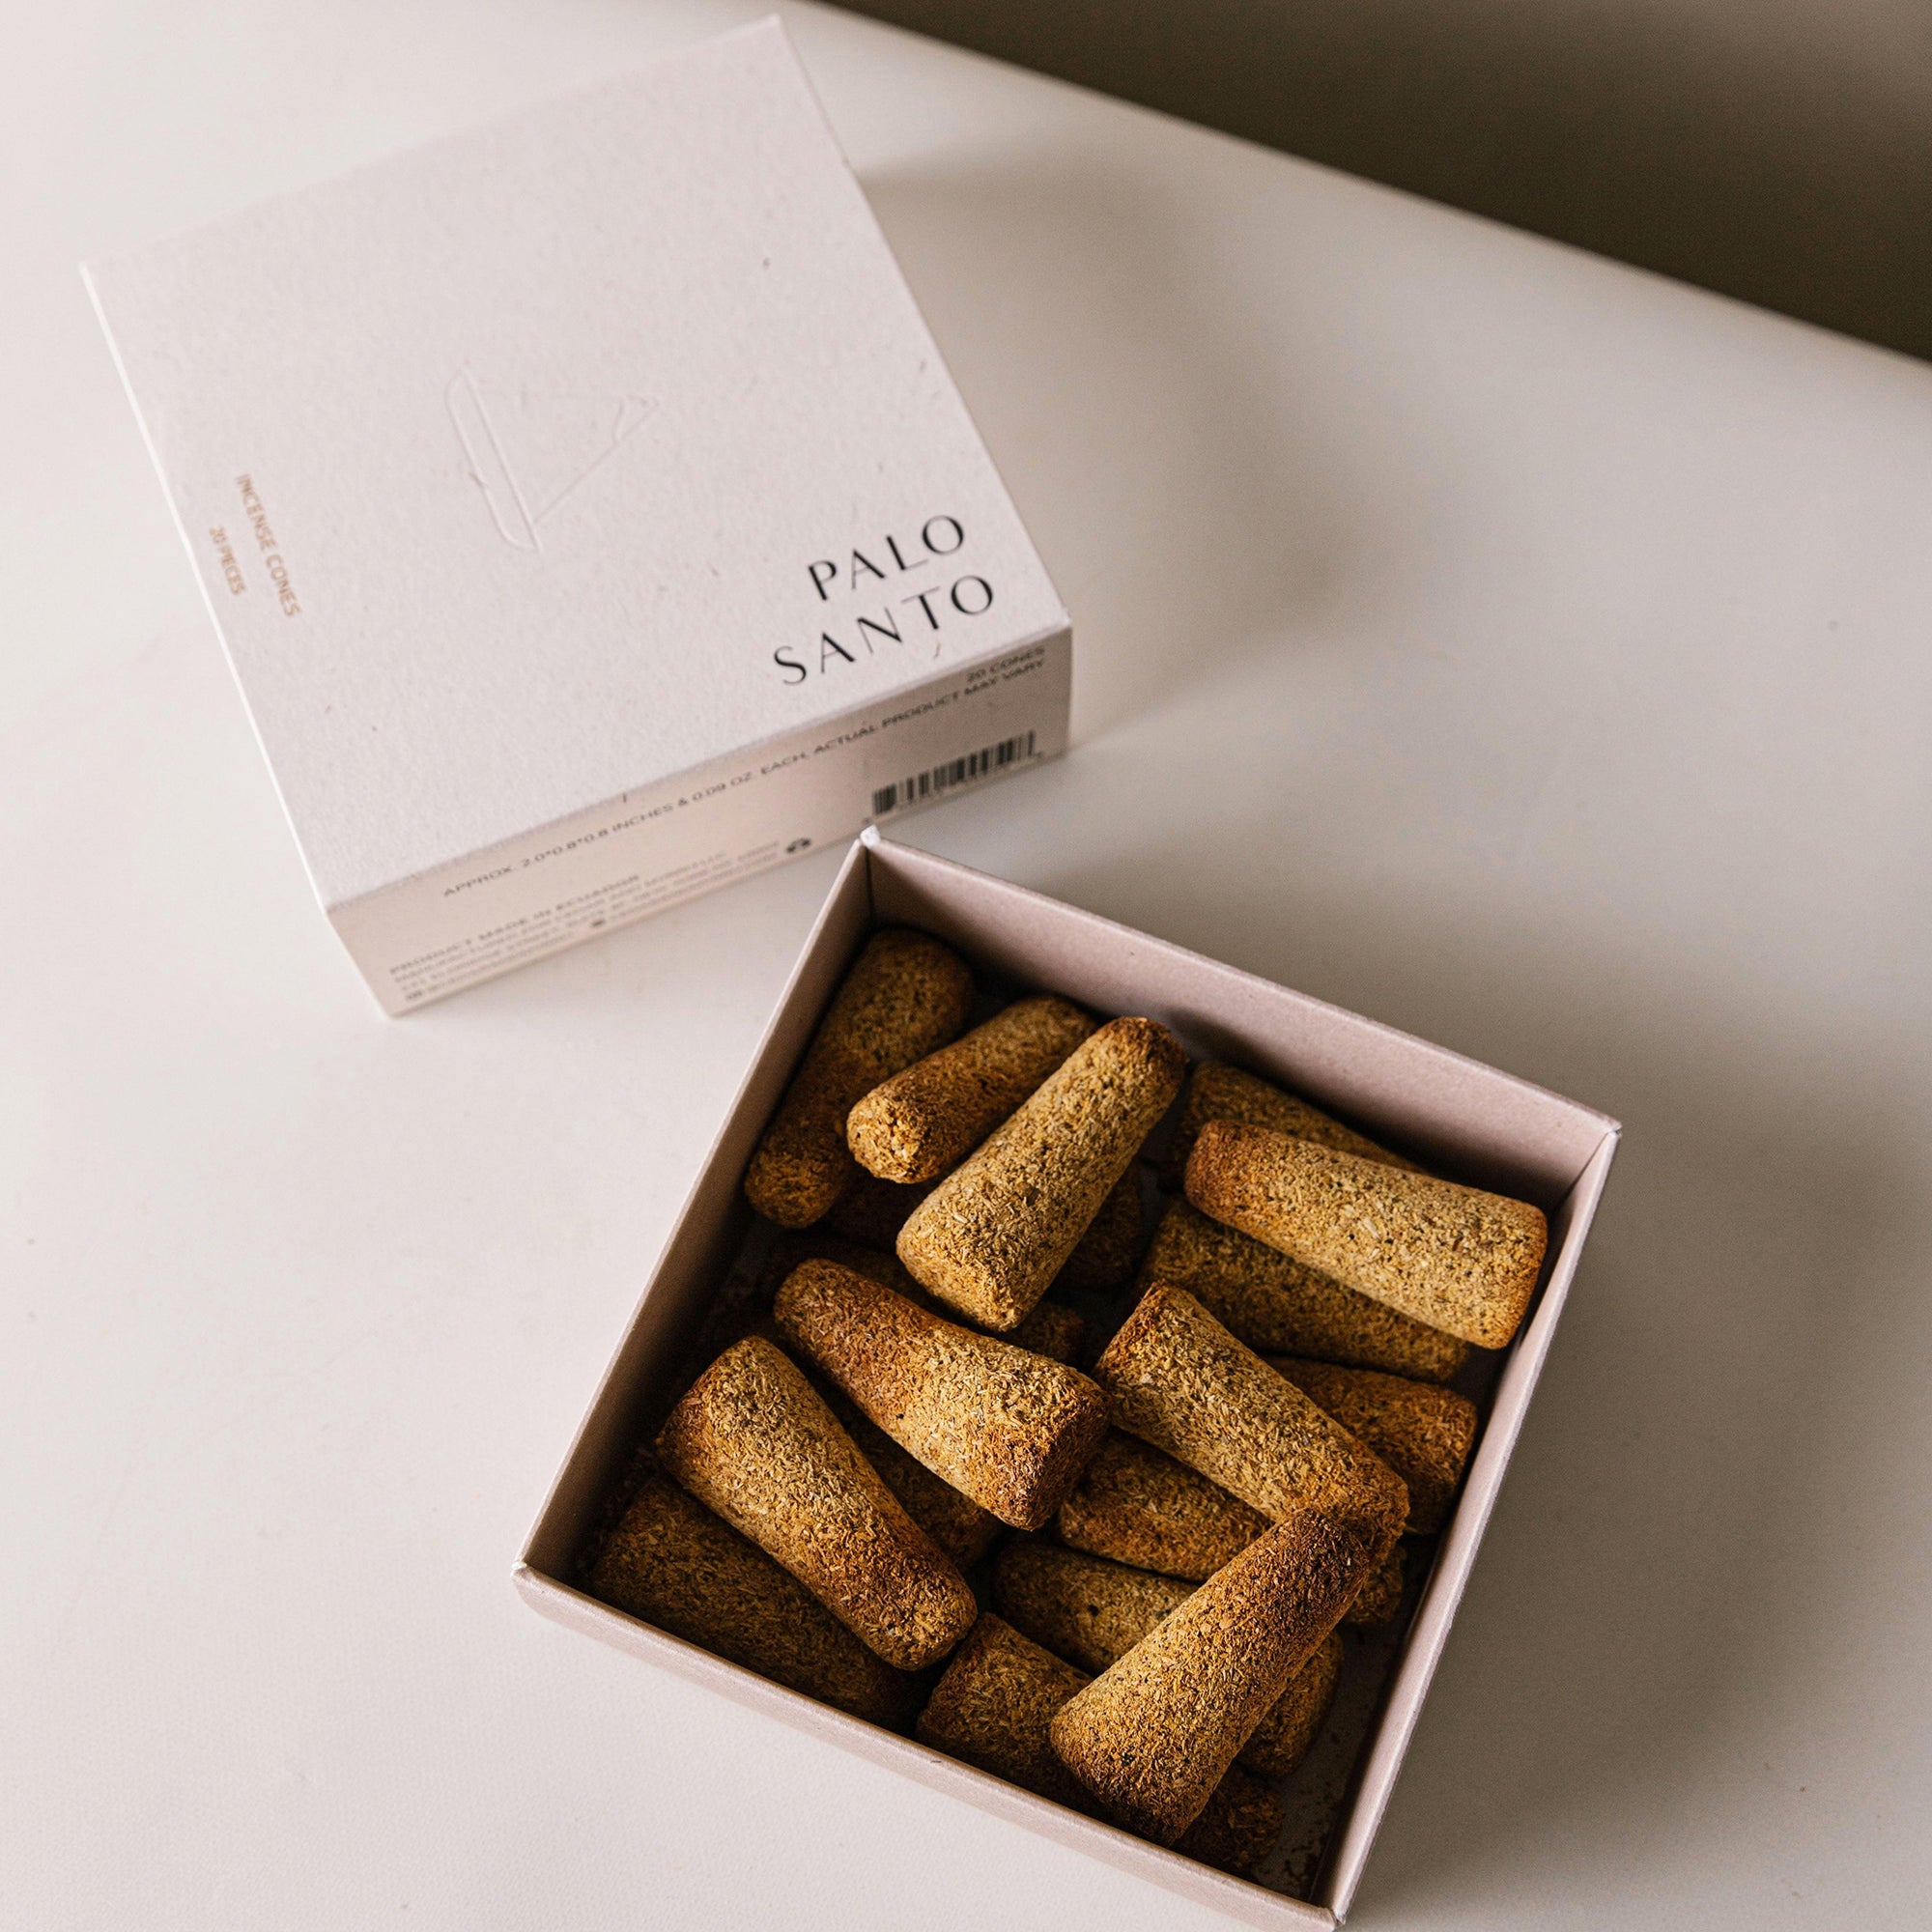 several pieces of palo santo incense cones in a box